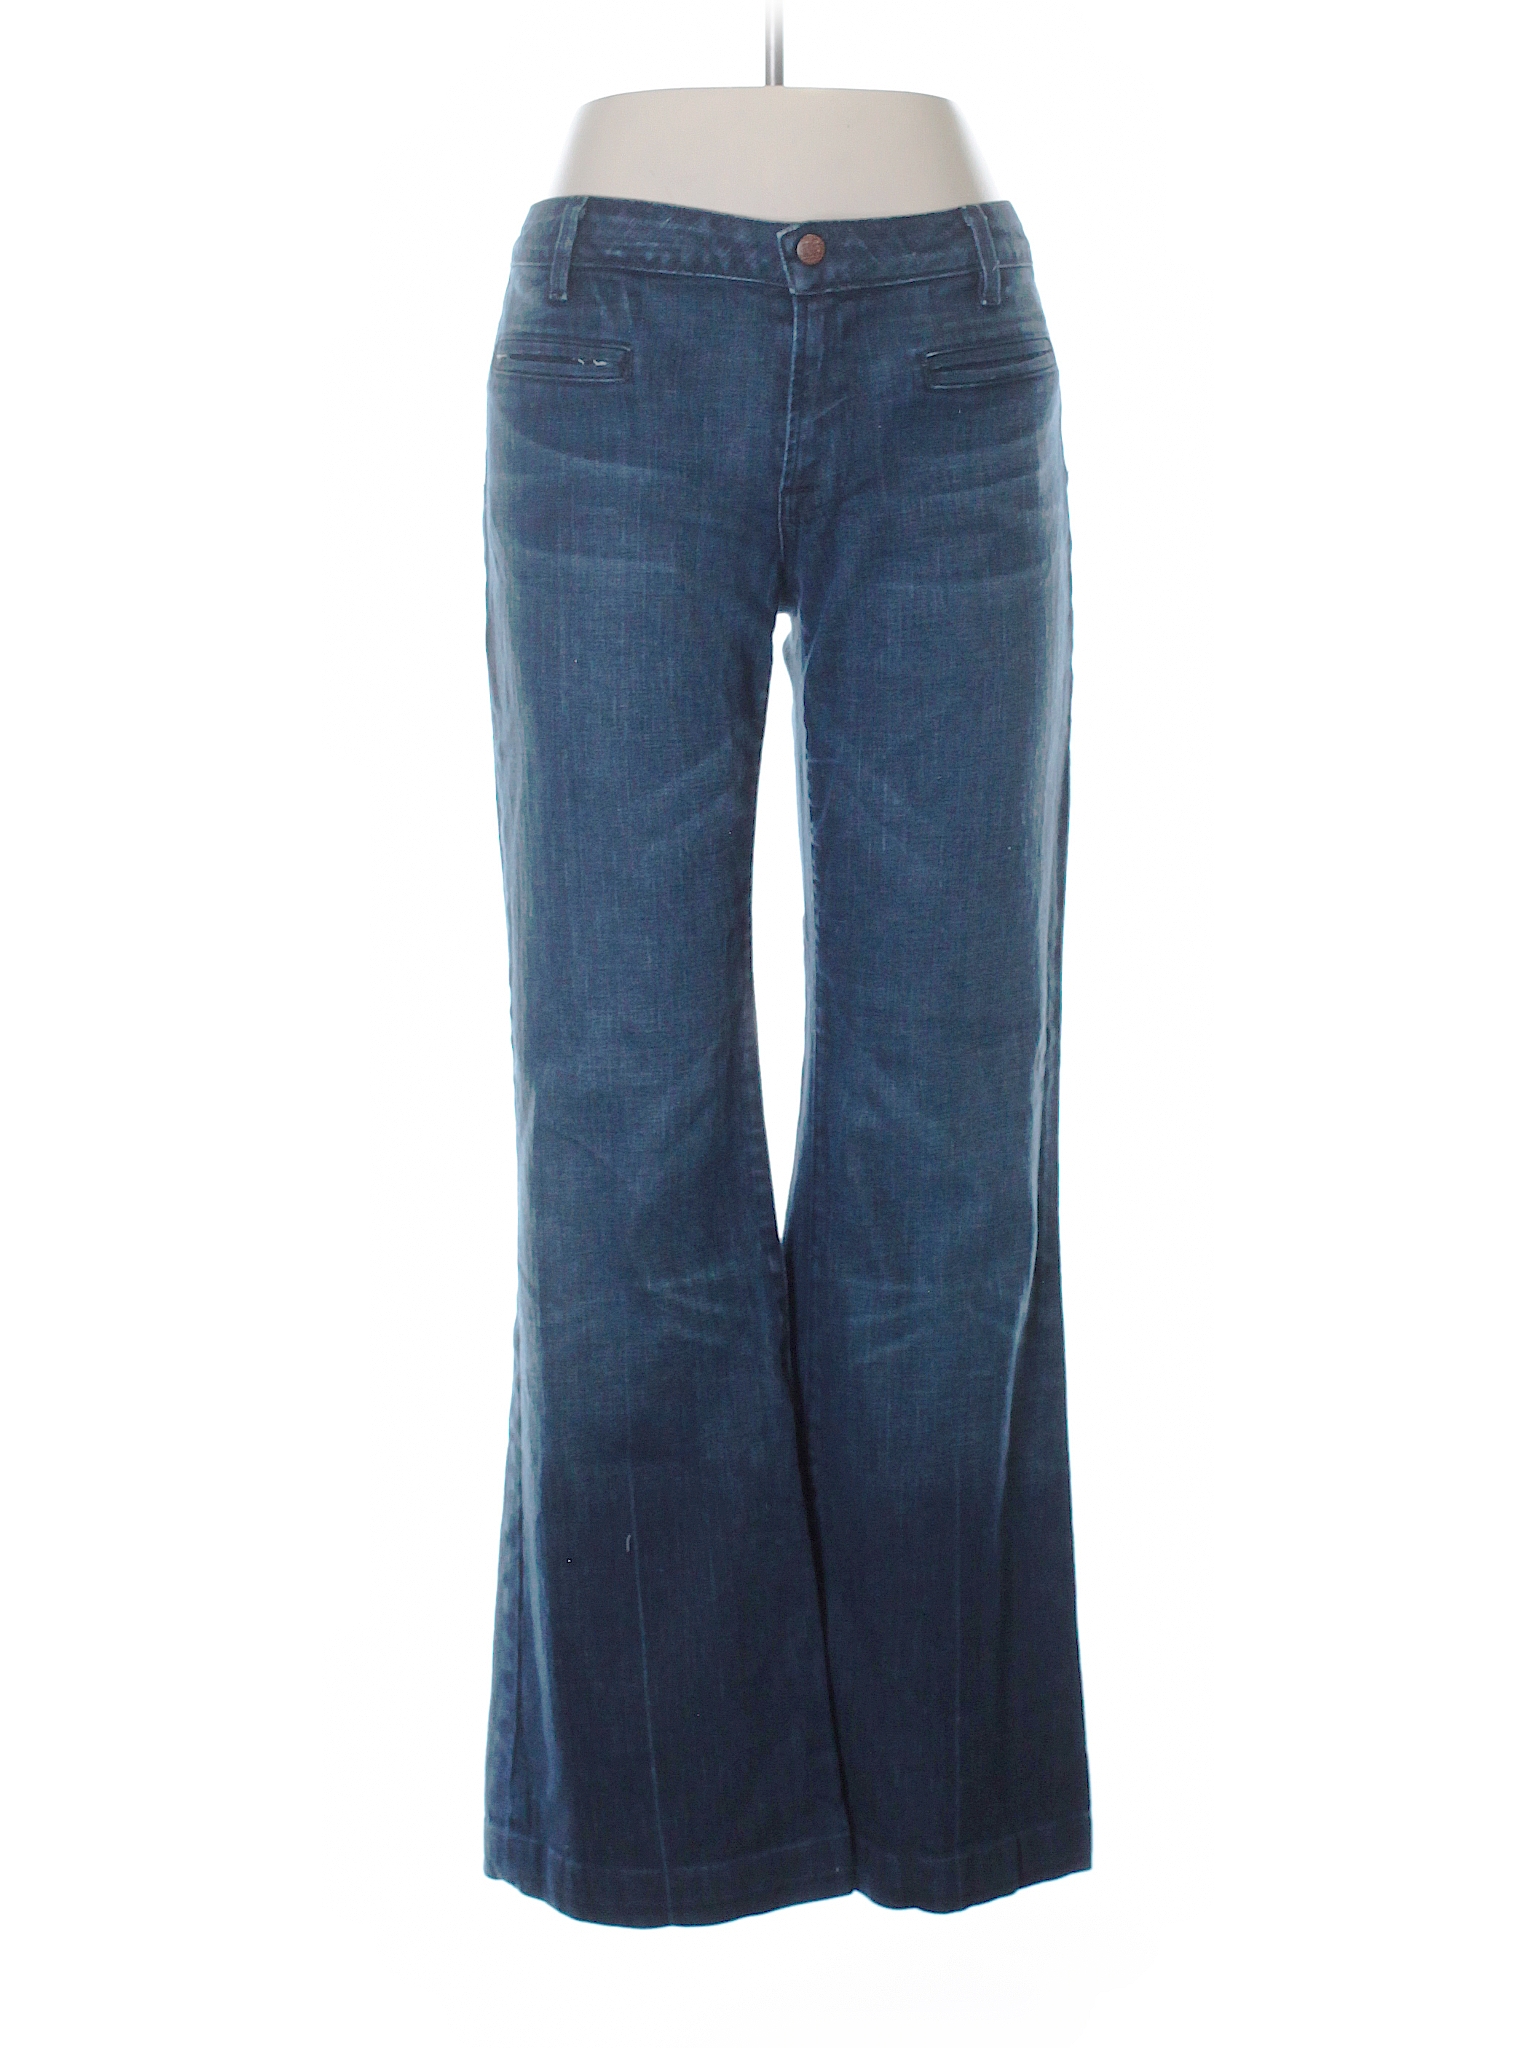 Landlubber Solid Dark Blue Jeans 30 Waist - 78% off | thredUP